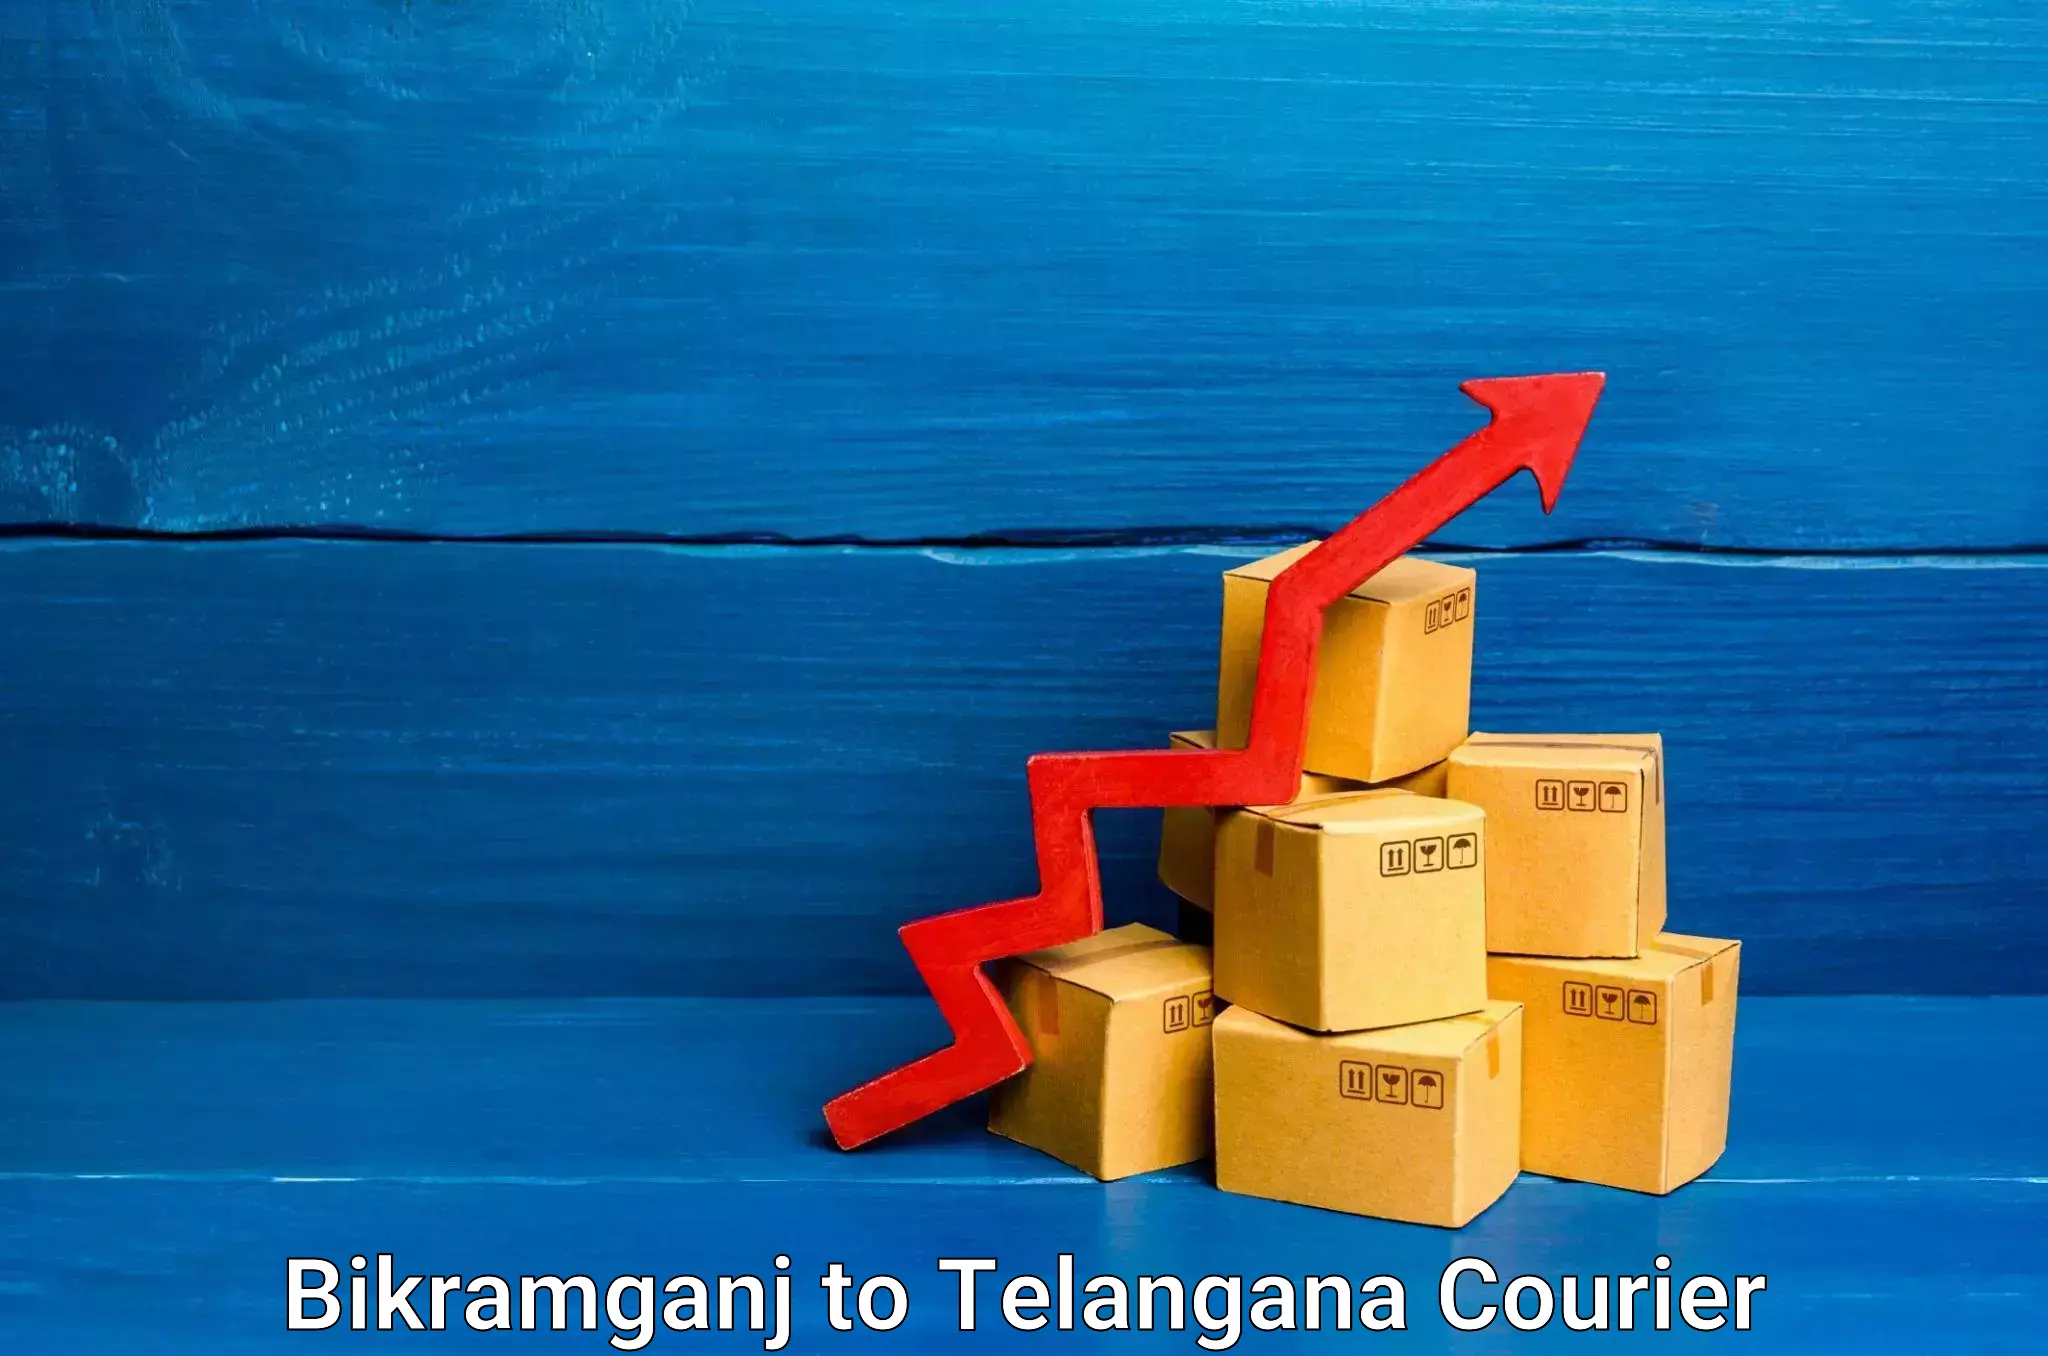 Skilled furniture transporters Bikramganj to Gangadhara